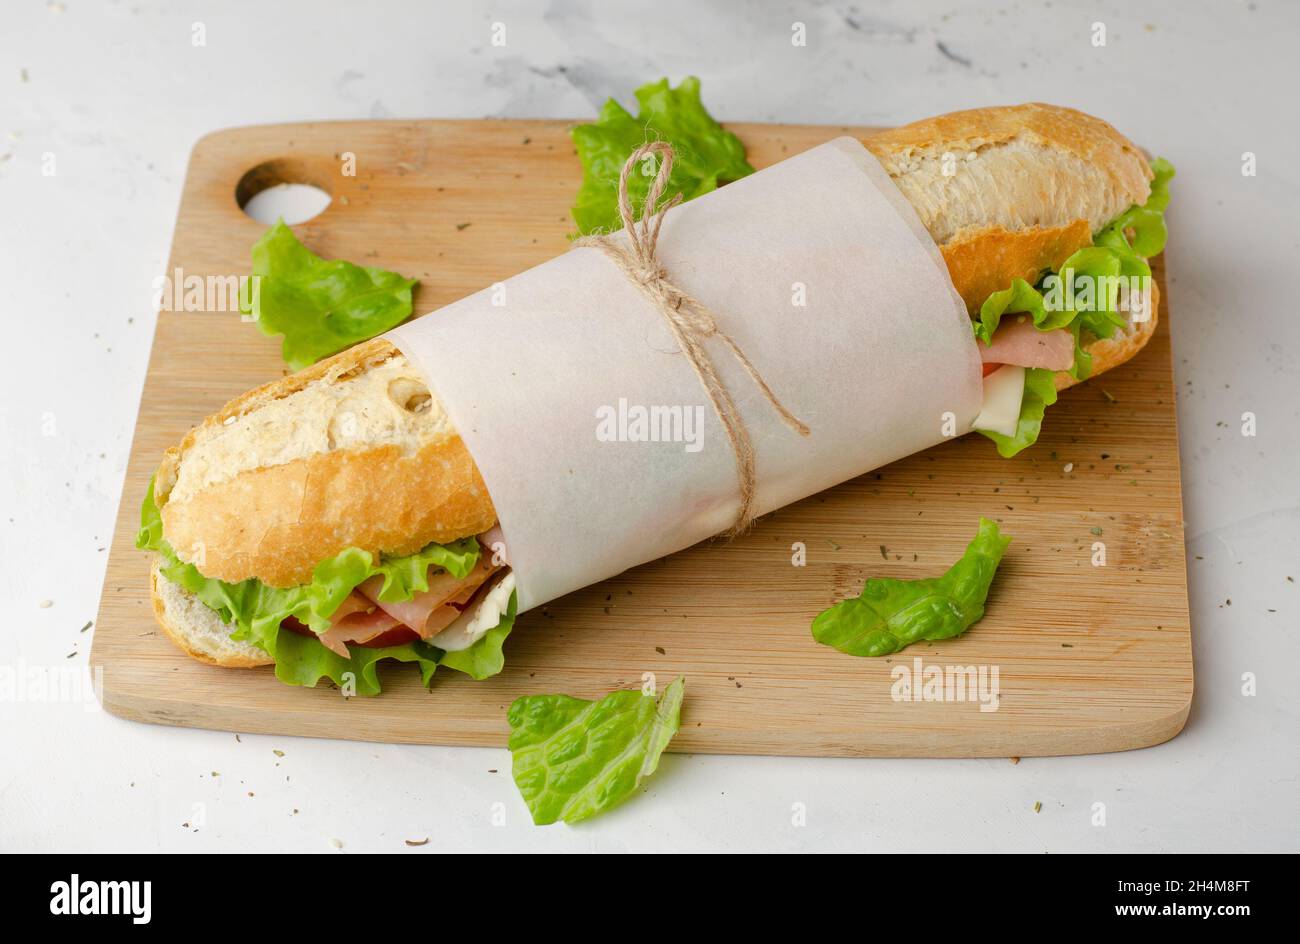 Sandwich di specialità gastronomiche con prosciutto, formaggio, pomodori e lattuga vista dall'alto sul tagliere Foto Stock